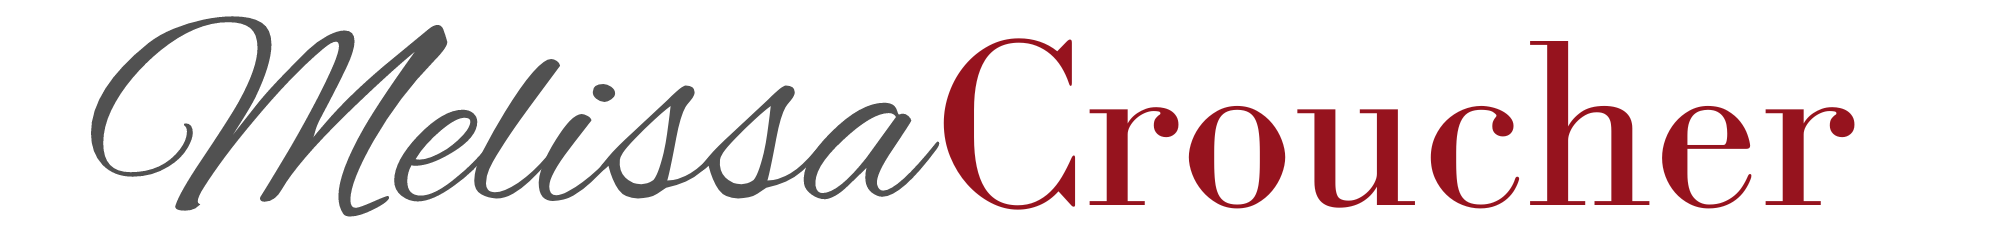 Melissa Croucher logo